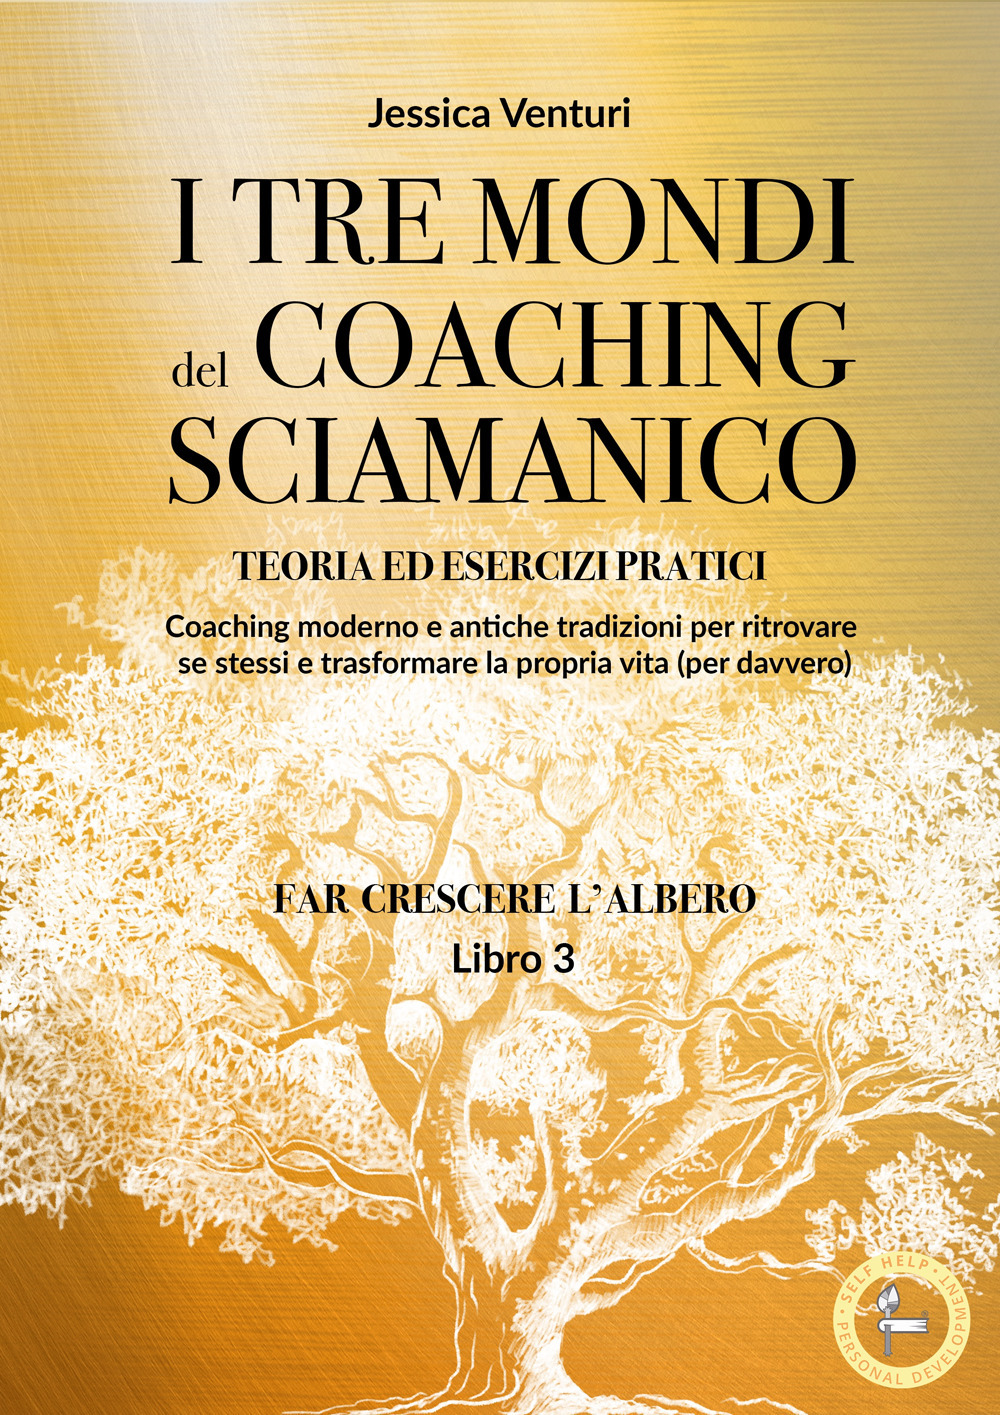 I tre mondi del coaching sciamanico. Vol. 3